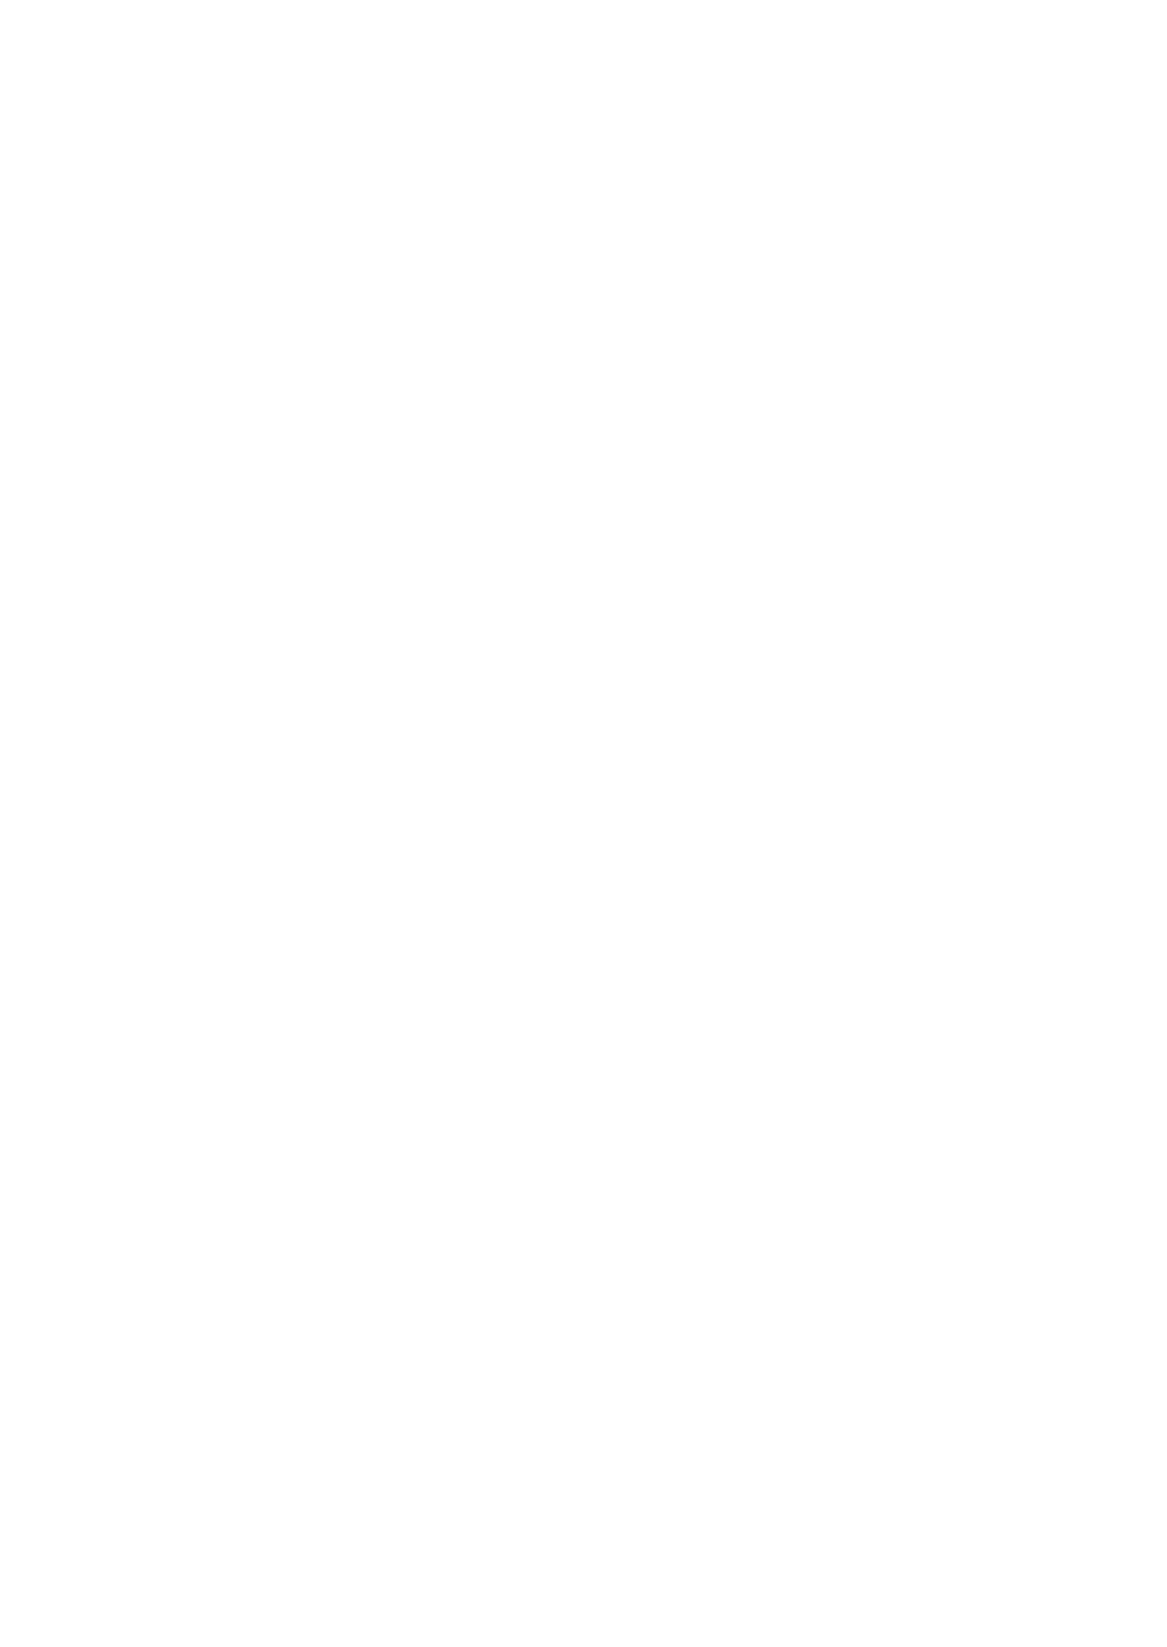 AdvantageProgIcons_RGB_Platinum-tag